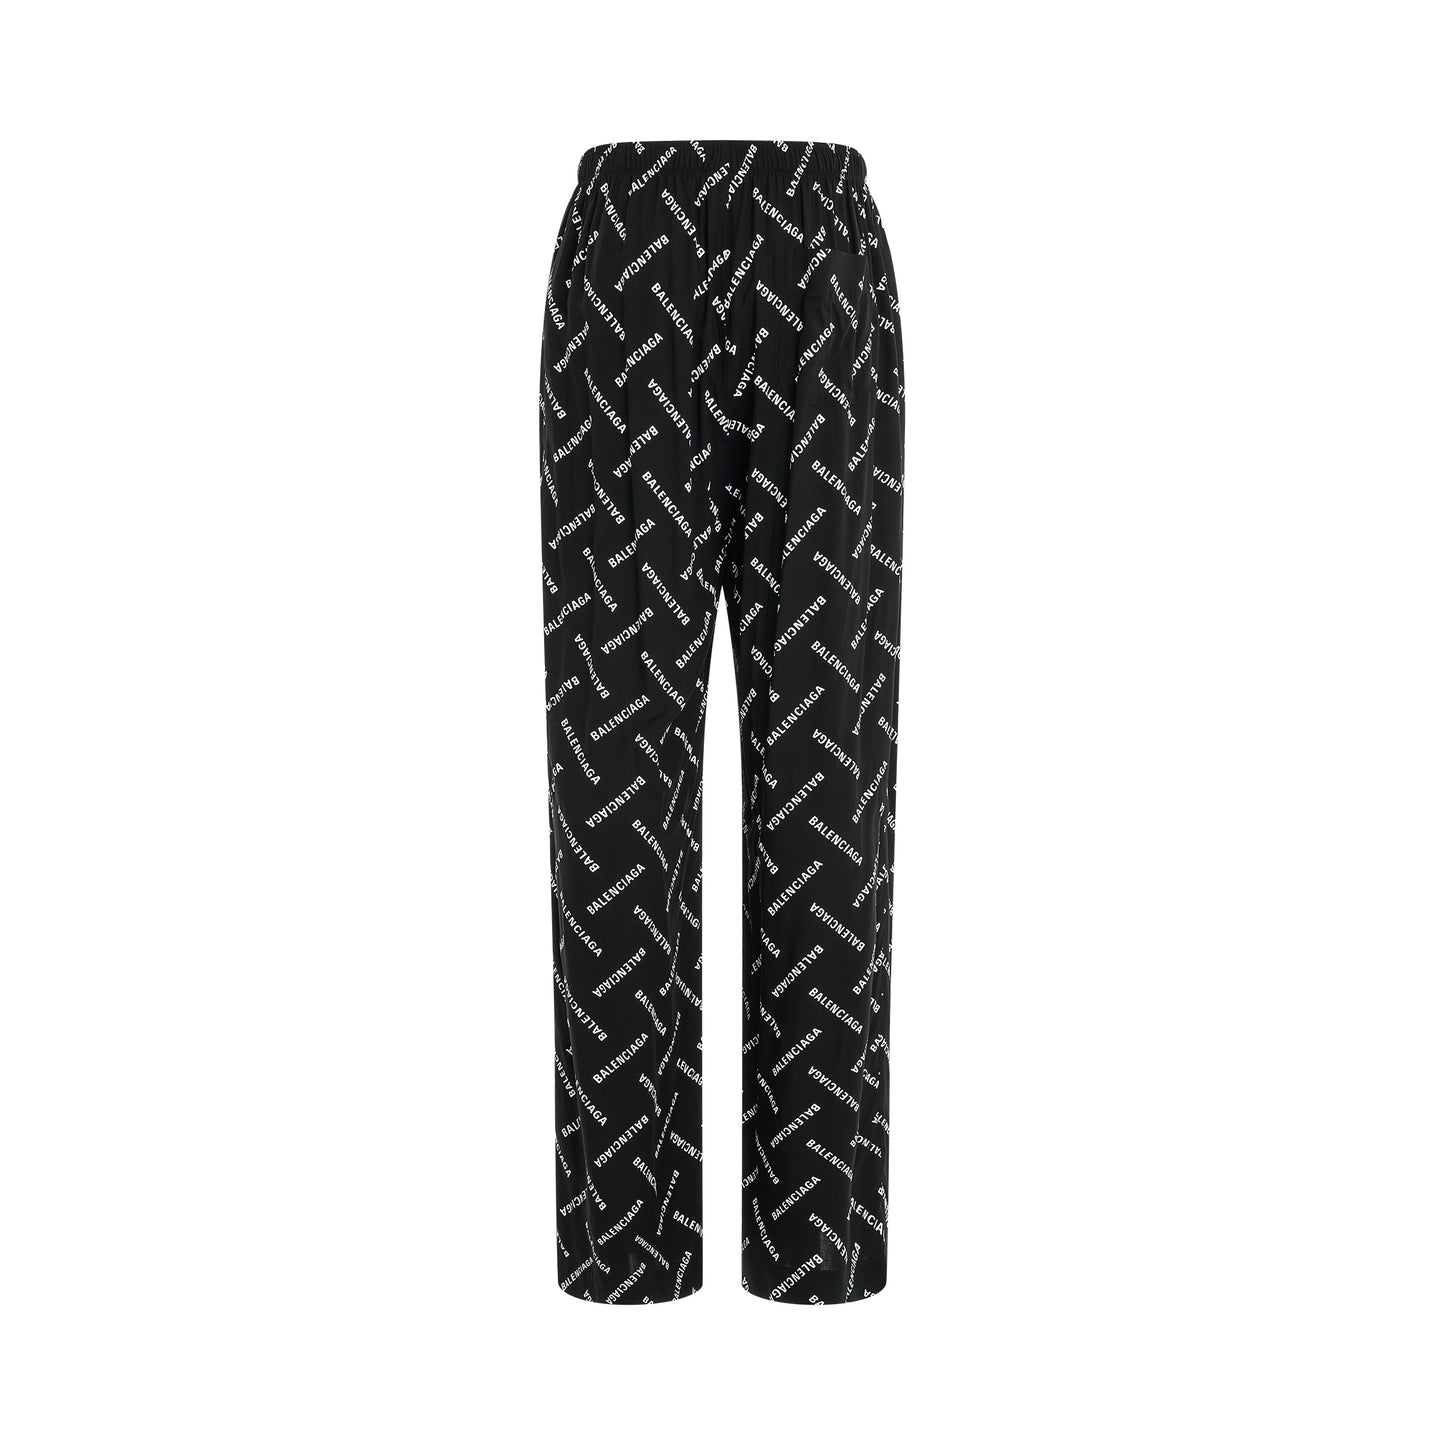 All-Over Logo Pyjama Pants in Black/White